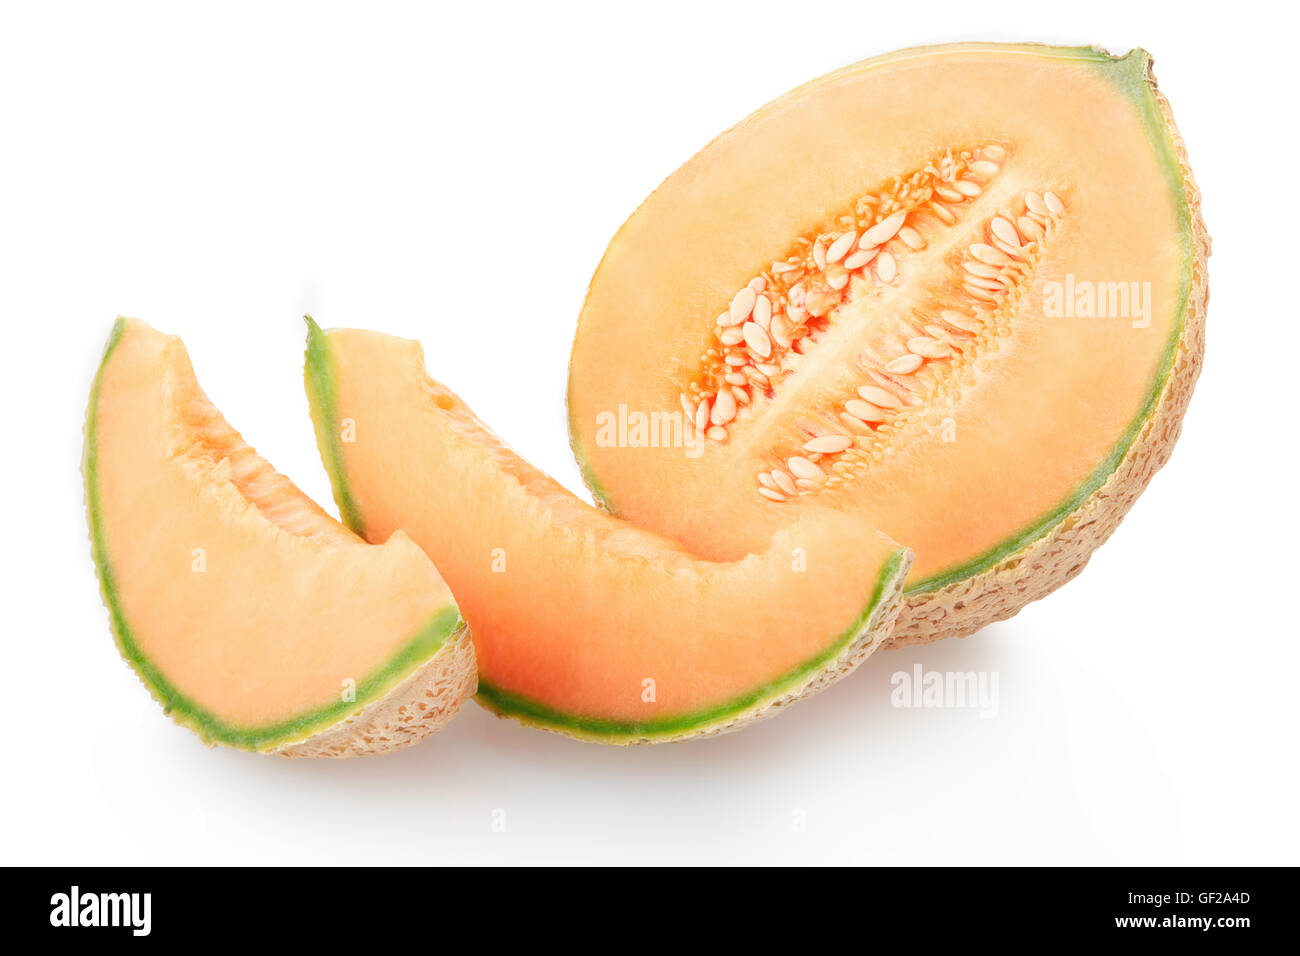 Cantaloupe-Melone-Abschnitt und Scheiben auf weiße, Clipping-Pfad Stockfoto